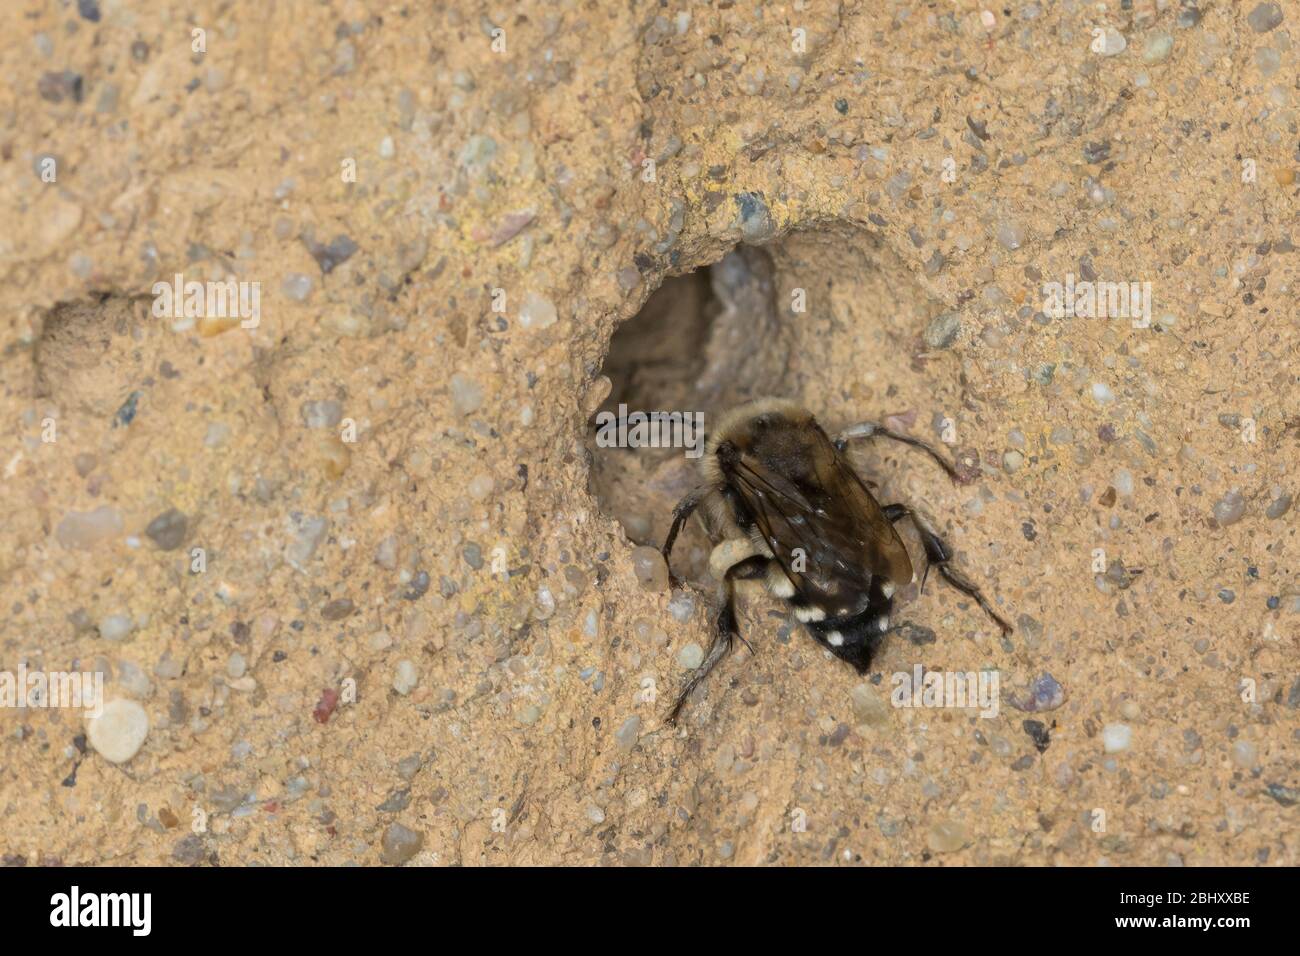 Trauerbiene, Gemeine Trauerbiene, Trauer-Biene, Weibchen an einer Lehmwand am Nistloch einer Pelzbiene (Anthophora plumipes), Melecta albifrons, Melec Foto Stock